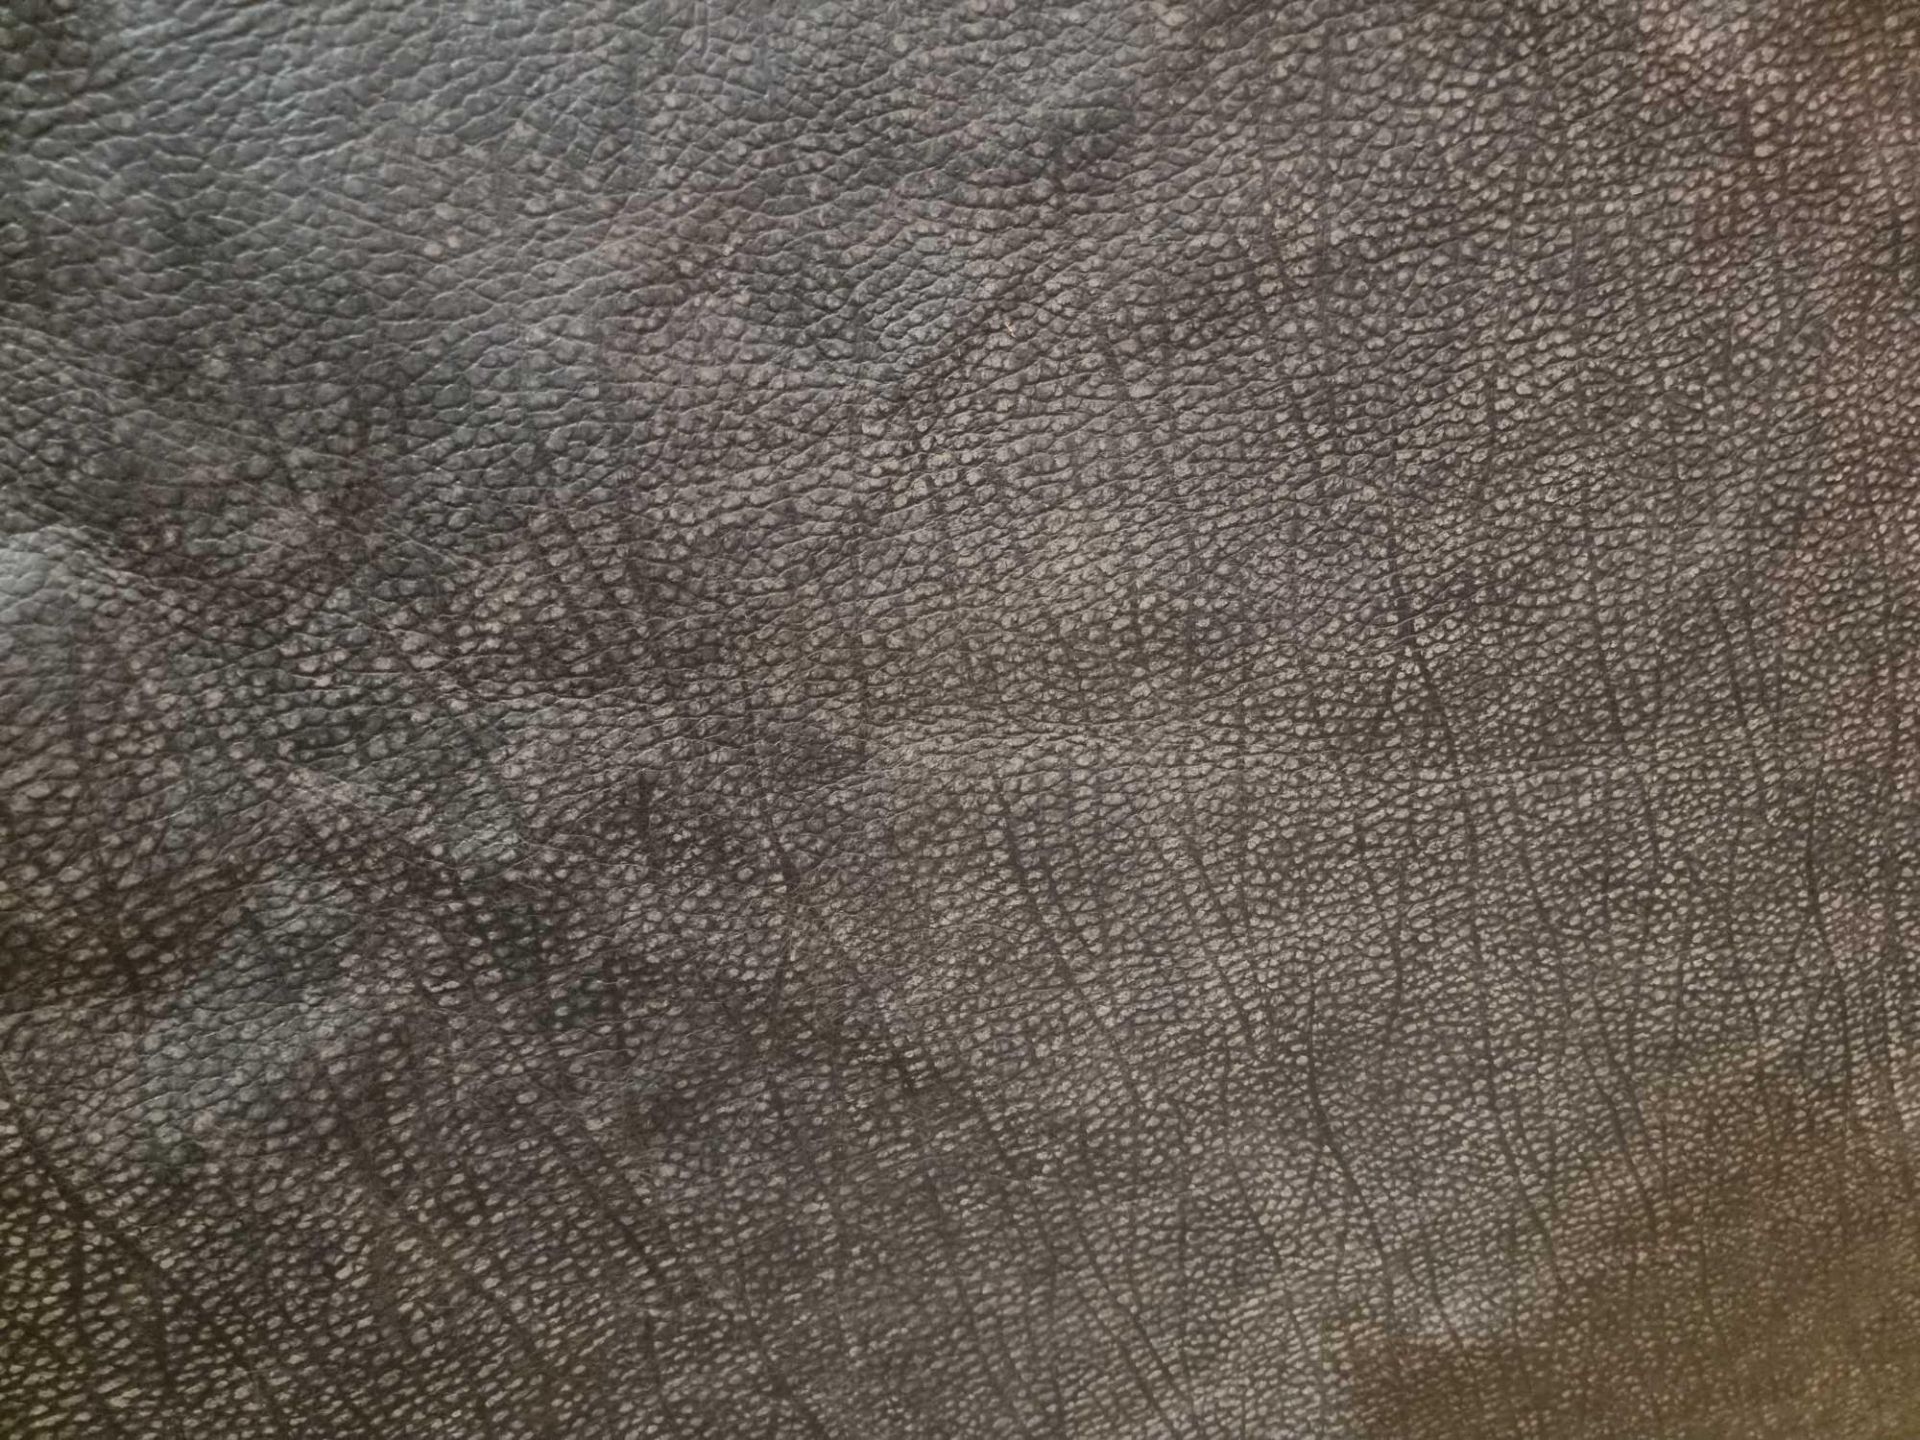 Chaps Satchel Conker Leather Hide approximately 4.2mÂ² 2.1 x 2cm ( Hide No,195)